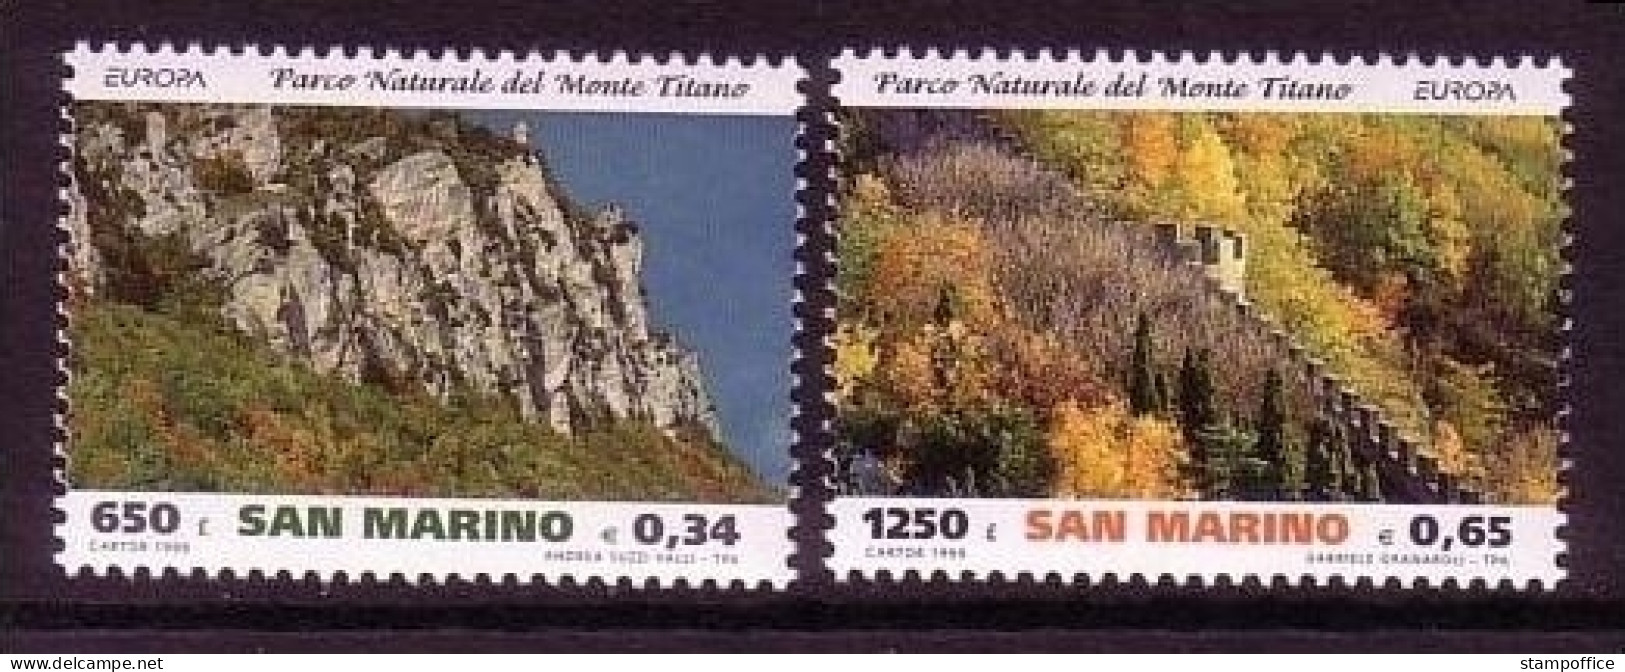 SAN MARINO MI-NR. 1832-1833 POSTFRISCH(MINT) EUROPA 1999 NATUR- Und NATIONALPARKS - 1999